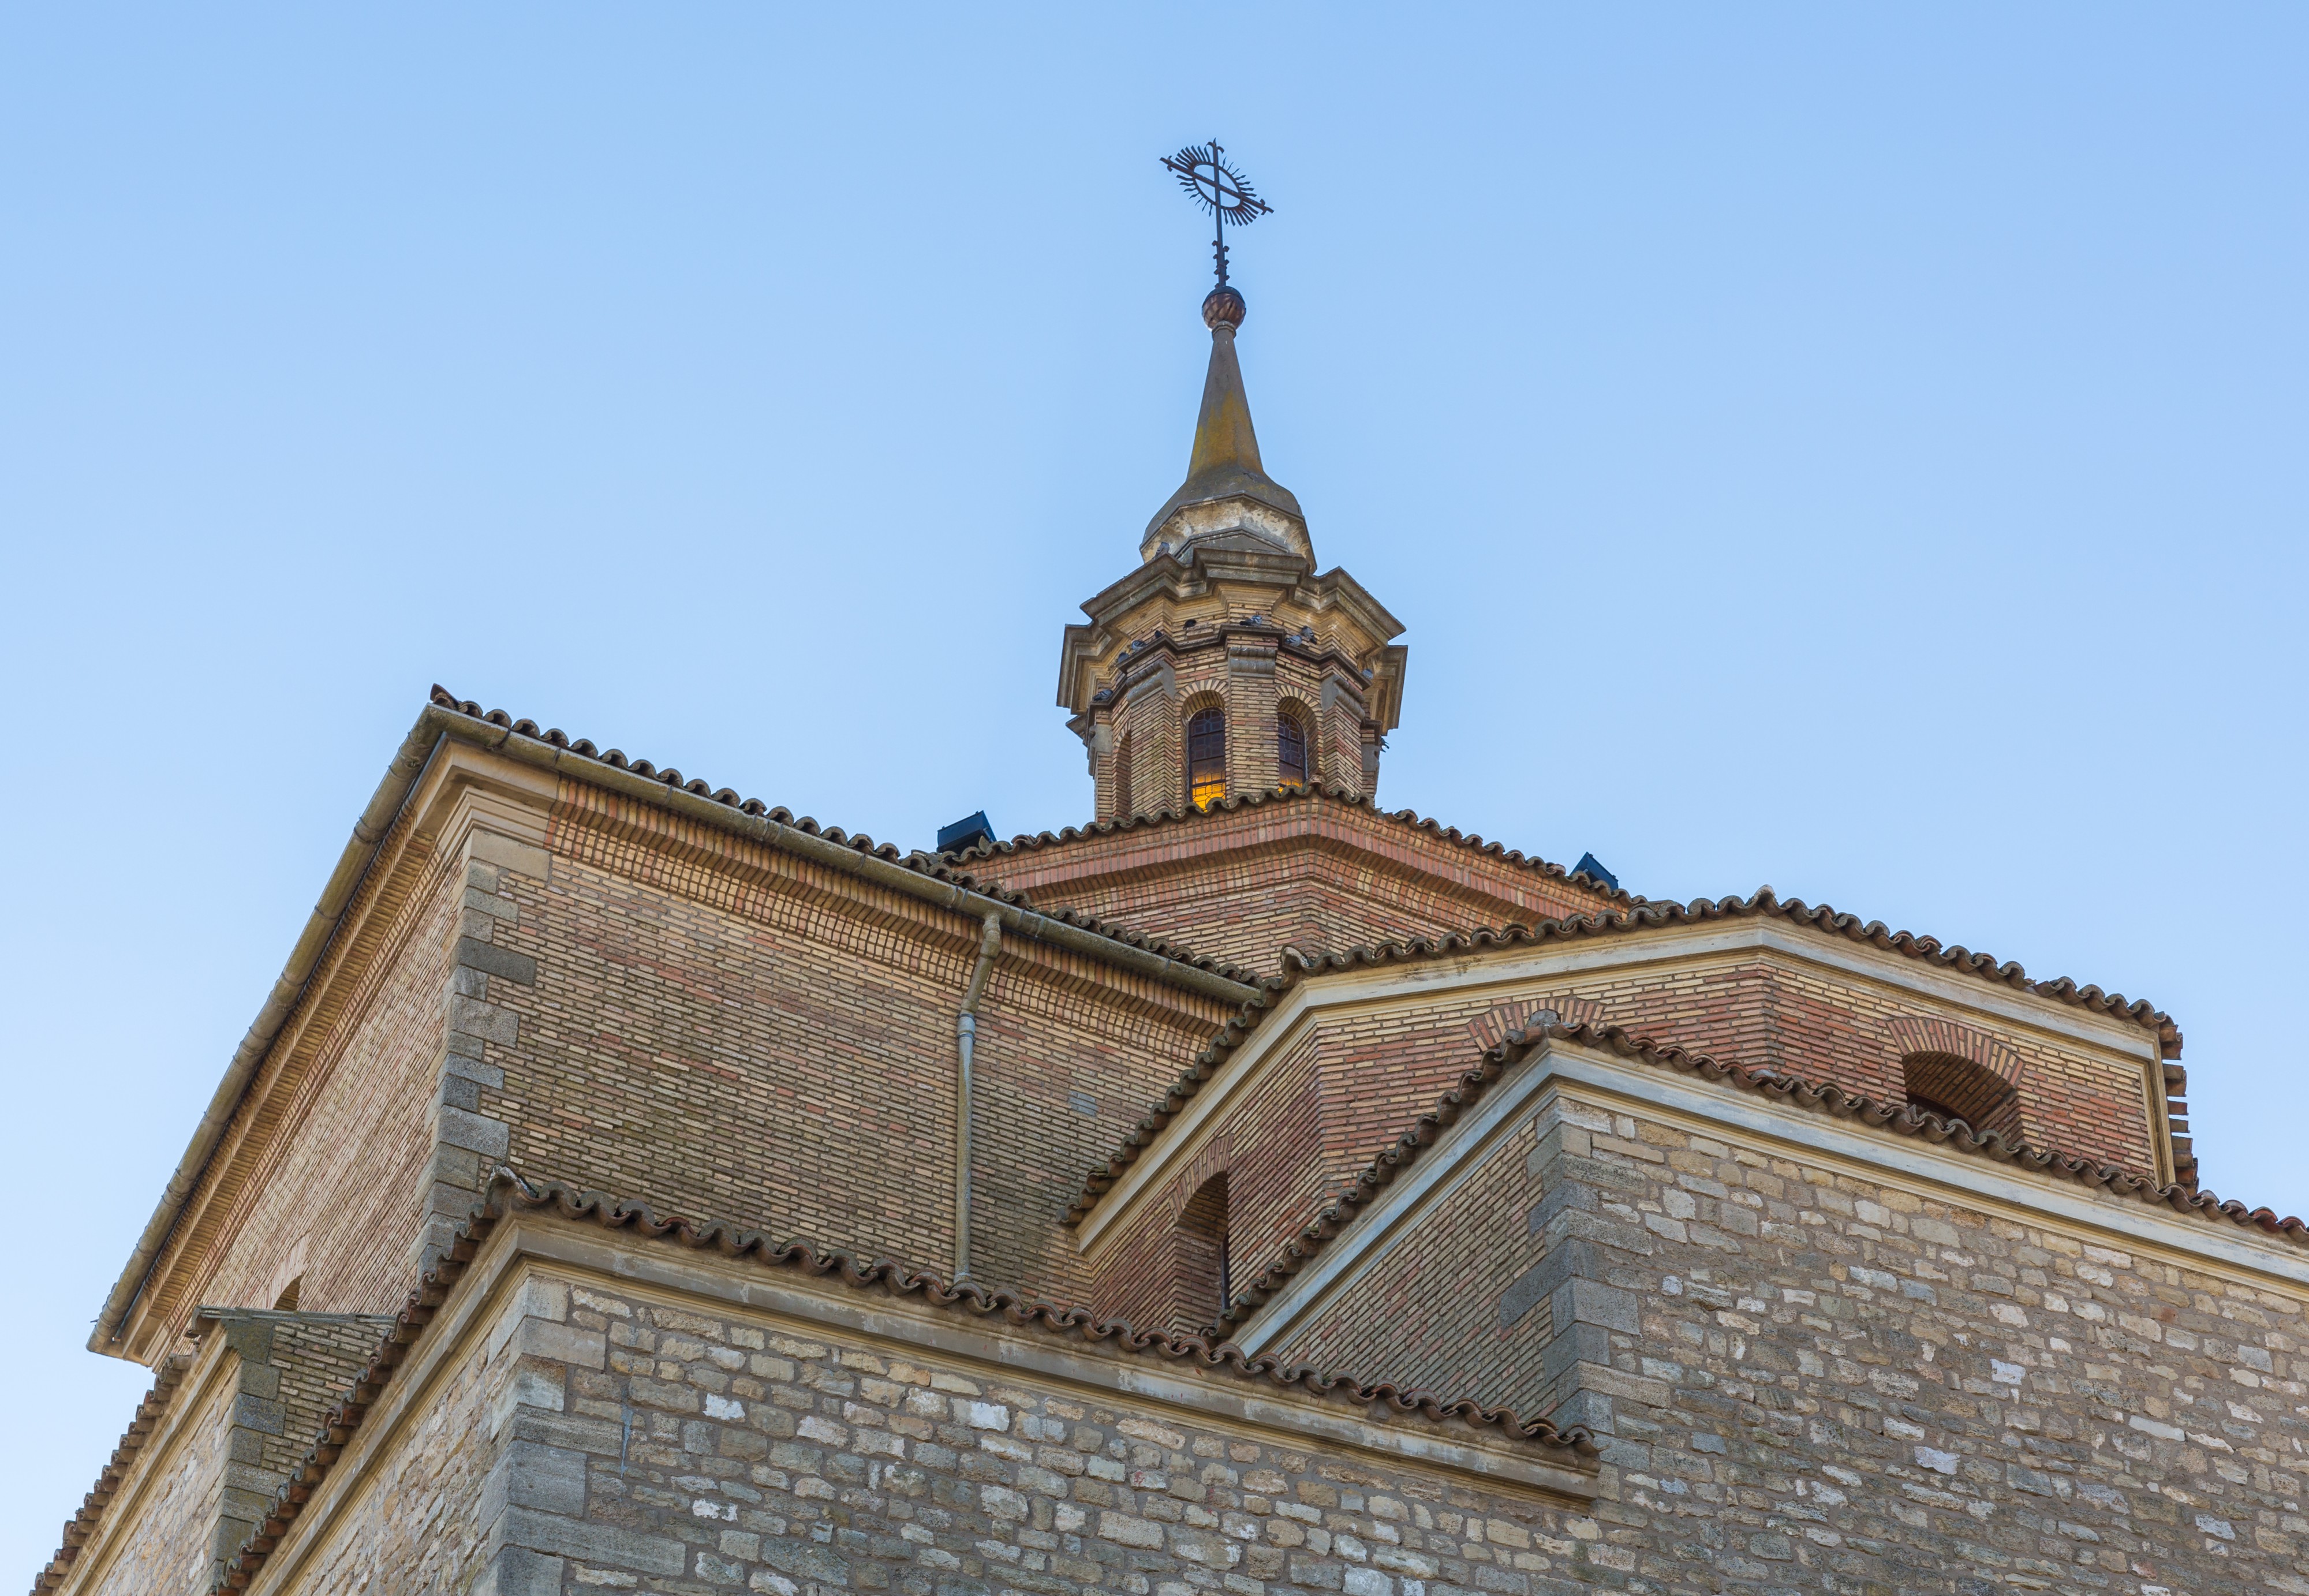 Iglesia de Nuestra Señora de la Asunción, Fuendetodos, Zaragoza, España, 2015-01-08, DD 05